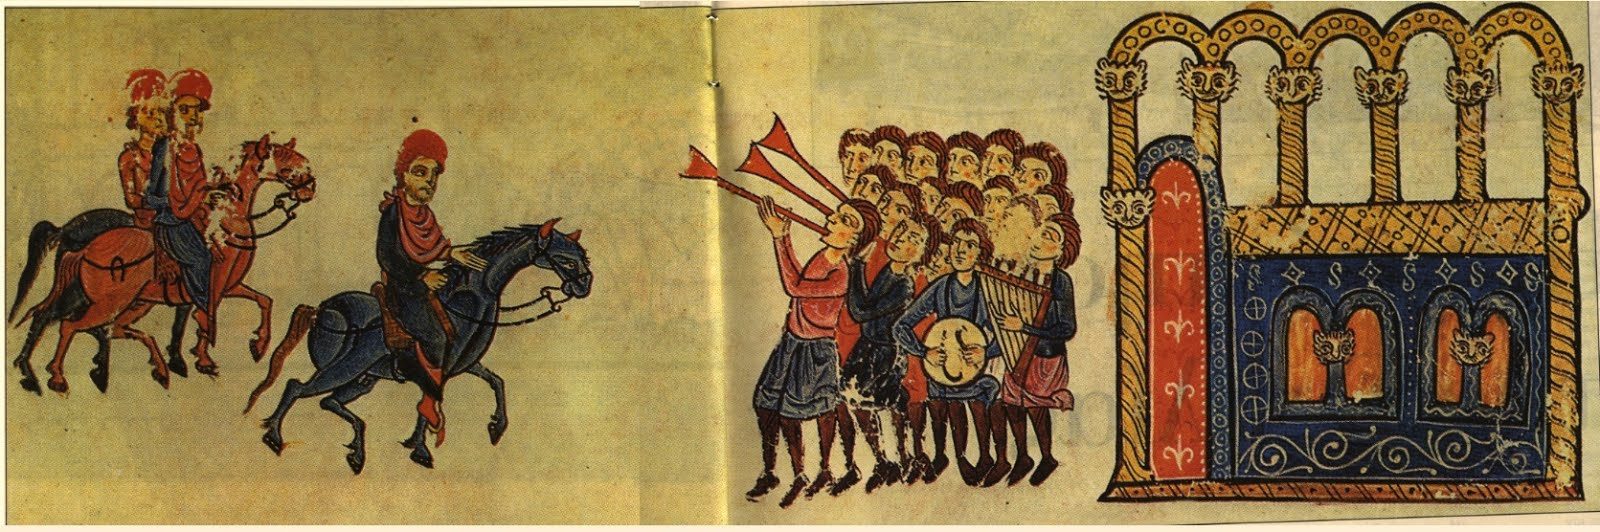 Ιωάννη Τσιμισκή13, κατέλαβε το Χαλέπι14 της Συρίας, που ήταν και η έδρα του Άραβα εμίρη ενώ κατέλαβε και την ακρόπολη της πόλης στις Φεβρουαρίου 963.Στις 15 Μαρτίου 963, ο αυτοκράτωρ Ρωμανός ο Β’ πέθανε και ύστερα από συσκέψεις που διενεργήθηκαν ανάμεσα σε Πατριάρχη, Σύγκλητο και ανώτερους παλατιανούς, απεφασίσθη να αναγορευθούν Αυτοκράτορες οι δύο ανήλικοι γιοί του Ρωμανού, Βασίλειος15 και Κωνσταντίνος16 και η αυτοκράτειρα Θεοφανώ17 να είναι επίτροπος τους, μέχρι την ενηλικίωσή τους.Ο Νικηφόρος Φωκάς, μόλις επληροφορήθη το θάνατο του αυτοκράτορα και κατ’ εντολήν της Θεοφανούς, πήγε στη Κωνσταντινούπολη, όπου διορίσθηκε Αρχιστράτηγος. Μόλις είδε τη Θεοφανώ, την ερωτεύτηκε αλλά και η αυτοκράτειρα τον ήθελε γιατί έβλεπε στο πρόσωπό του έναν αδιάφθορο και ειλικρινή προστάτη των συμφερόντων της δυναστείας. Ο ευνούχος Ιωσήφ Βρίγγας18 θέλοντας να αποτρέψει την επιρροή του Νικηφόρου Φωκά, επιχείρησε να τον συλλάβει (και πιθανώς να τον σκοτώσει) στην Κωνσταντινούπολη. Τελικά, ο Νικηφόρος εσώθη, με τη βοήθεια του πατριάρχη Κωνσταντινουπόλεως Πολυεύκτου19, του οποίου είχε κερδίσει την υποστήριξη. Έπειτα, ο Ιωσήφ Βρίγγας προσπάθησε, χωρίς όμως αποτέλεσμα, να προσεταιριστεί τους στρατηγούς Ιωάννη Τσιμισκή και Ρωμανό Κουρκούα20.Στις 3 Ιουλίου 963, τα στρατεύματα του Νικηφόρου Φωκά, που έδρευαν στη Καισάρεια της Καππαδοκίας επαναστάτησαν. Τον ανεκήρυξαν αυτοκράτορα με πρωτοβουλία του Τσιμισκή και προήλασαν μέχρι την Κωνσταντινούπολη. Μόλις έφτασαν απέναντι από την Βασιλεύουσα, ο Νικηφόρος Φωκάς ανακοίνωσε τα γεγονότα με επιστολές στον Βρίγγα, στον Πατριάρχη Πολύευκτο και στη Σύγκλητο, τους οποίους και κάλεσε να τον αναγνωρίσουν. Ο Βρίγγας κήρυξε «εκτός νόμου» τους οπαδούς και τους συγγενείς του Φωκά21 και προσπάθησε να συλλάβει τον πατέρα του Βάρδα Φωκά και τον αδελφό του Λέοντα Φωκά22. Ο Βάρδας Φωκάς κατέφυγε ως ικέτης στην Αγία Σοφία και ετέθη υπό την προστασία του Πατριάρχη Πολύευκτου ενώ ο Λέων Φωκάς κατόρθωσε να διαφύγει και να φτάσει στο στρατόπεδο του Νικηφόρου. Ο λαός της Κωνσταντινούπολης και ένα ένοπλο τμήμα 3.000 ανδρών με αρχηγό τον Βασίλειο Λακαπηνό23 κατέλαβε το Ναύσταθμο, προσμένοντας το Νικηφόρο Φωκά και τα επαναστατημένα στρατεύματά του. Ο Νικηφόρος Φωκάς μπήκε στην Κωνσταντινούπολη, όπου ο λαός τον υπεδέχθη και στις 16 Αυγούστου εστέφθη Αυτοκράτωρ στην Αγία Σοφία. Ο Βρίγγας κατέφυγε ικέτης στην Αγία Σοφία αλλά εξορίστηκε.